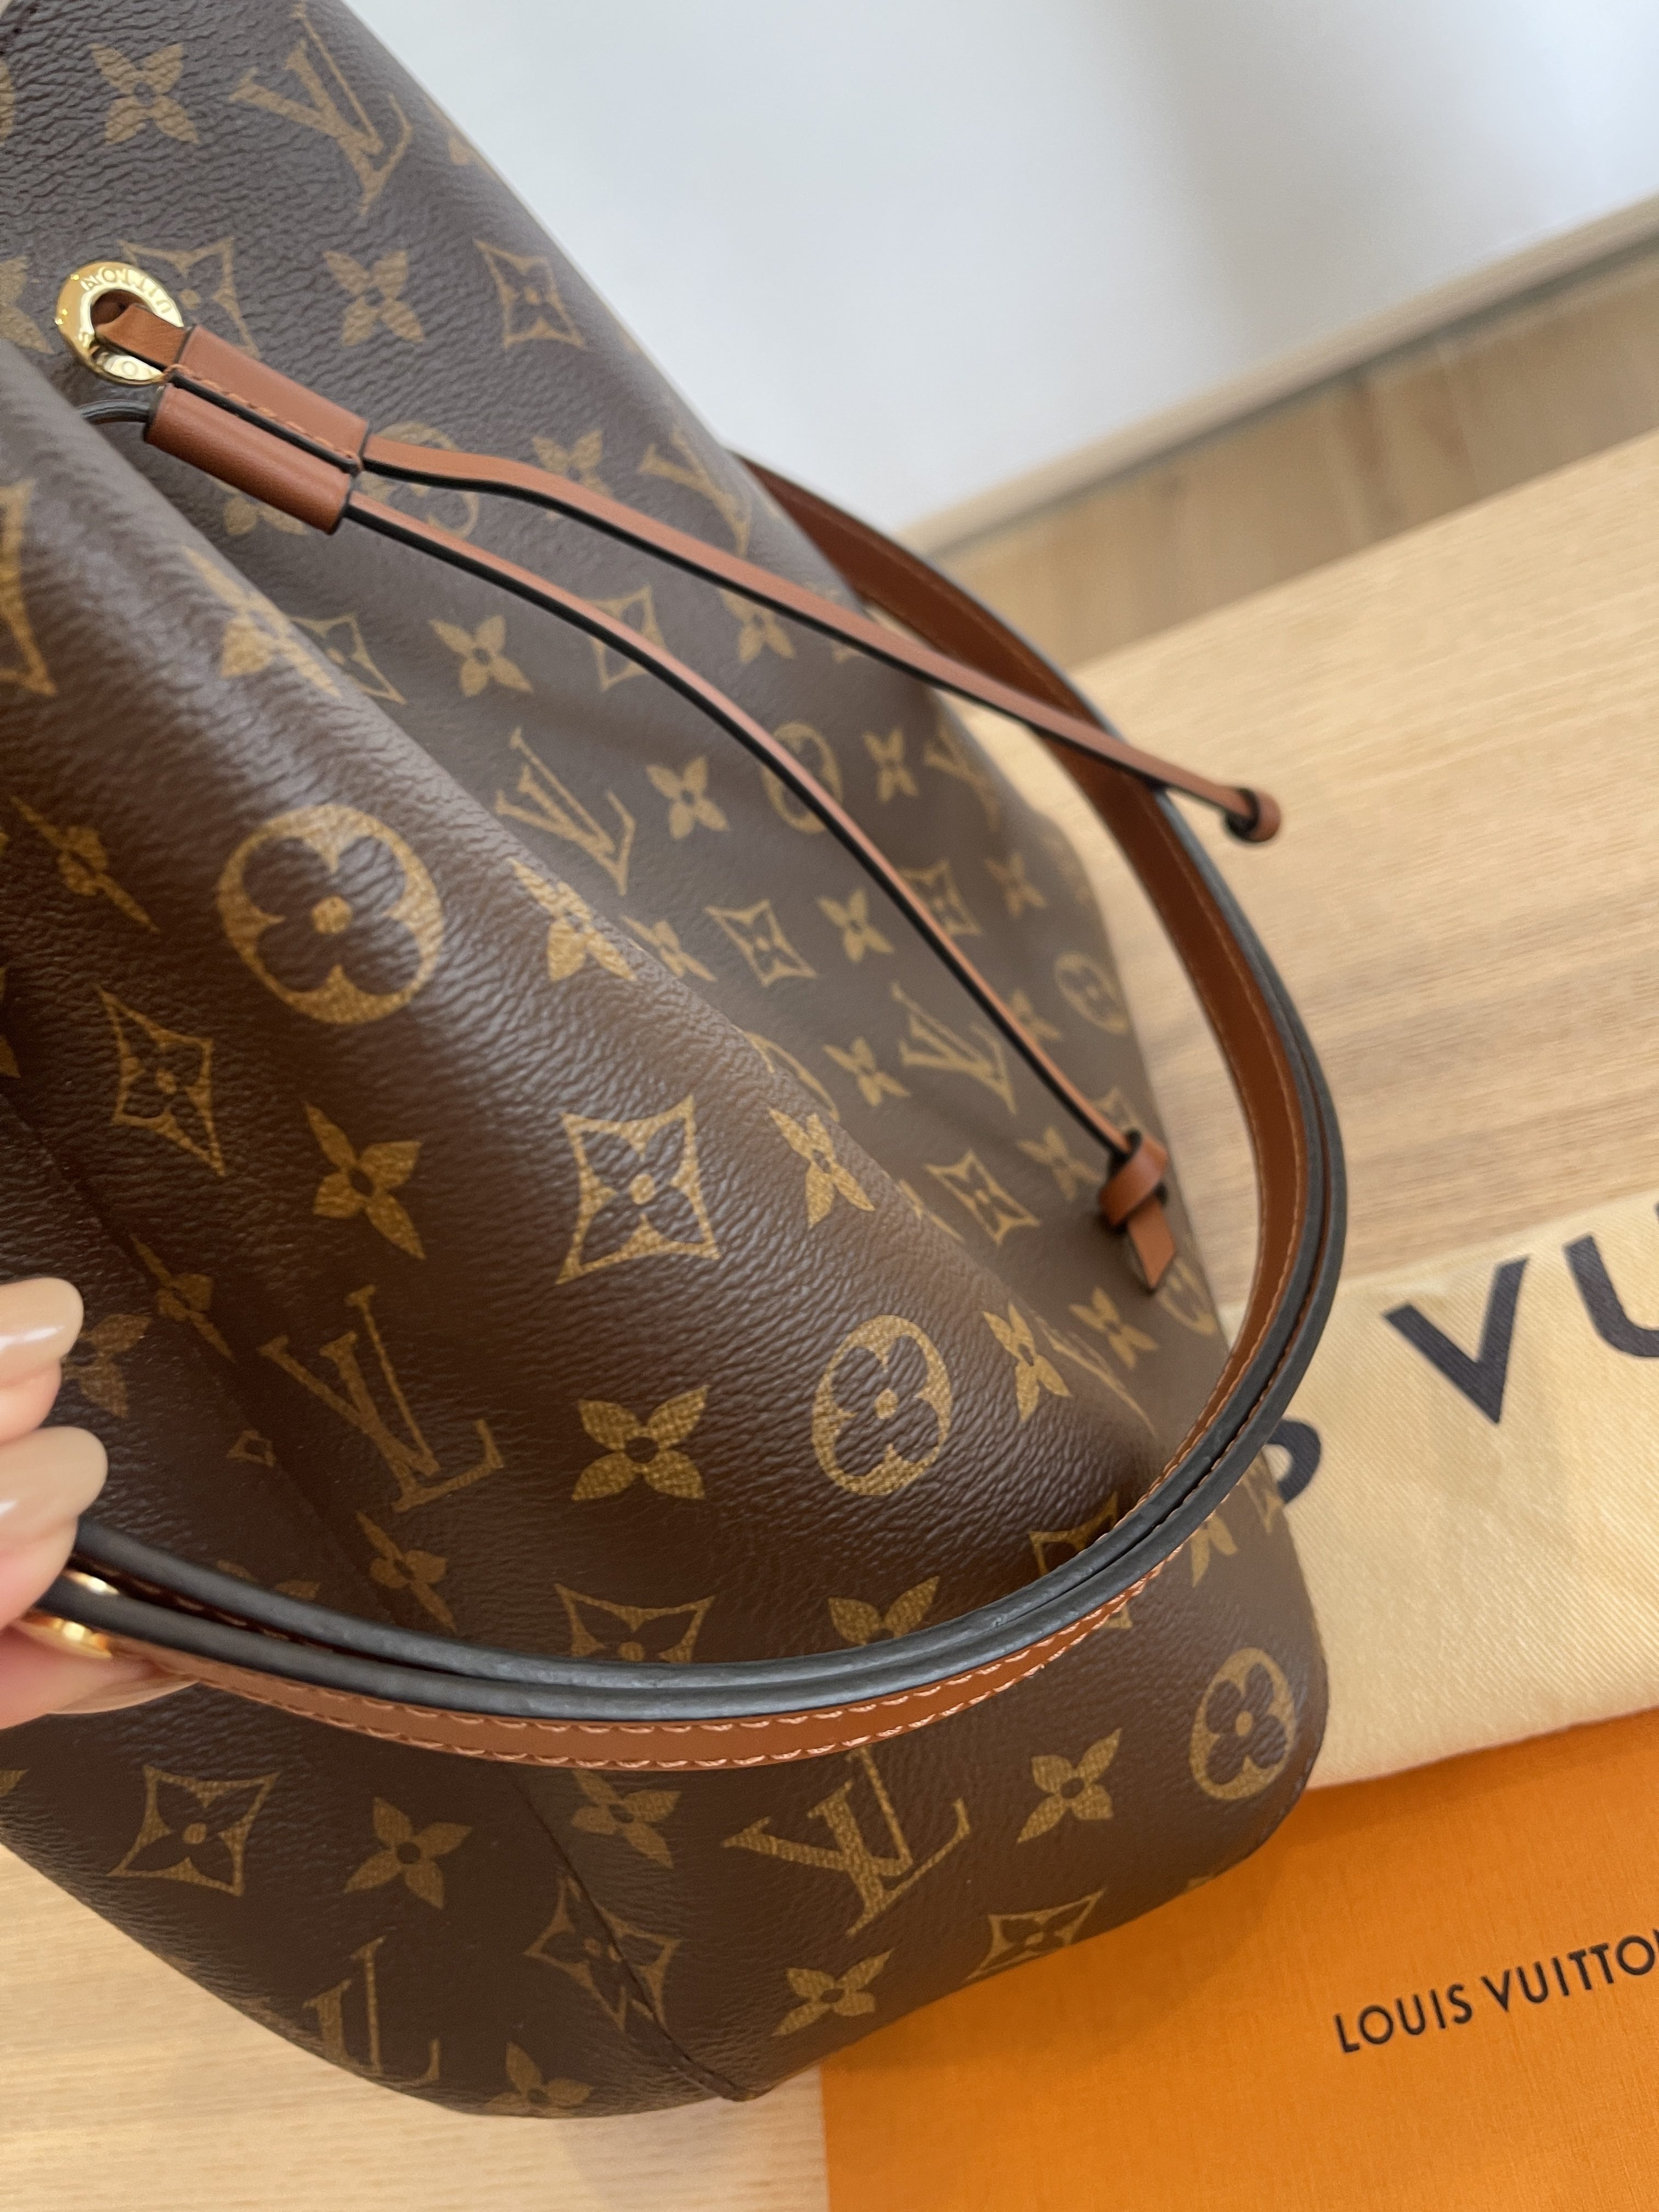 LV Neonoe / Louis Vuitton neonoe caramel, Luxury, Bags & Wallets